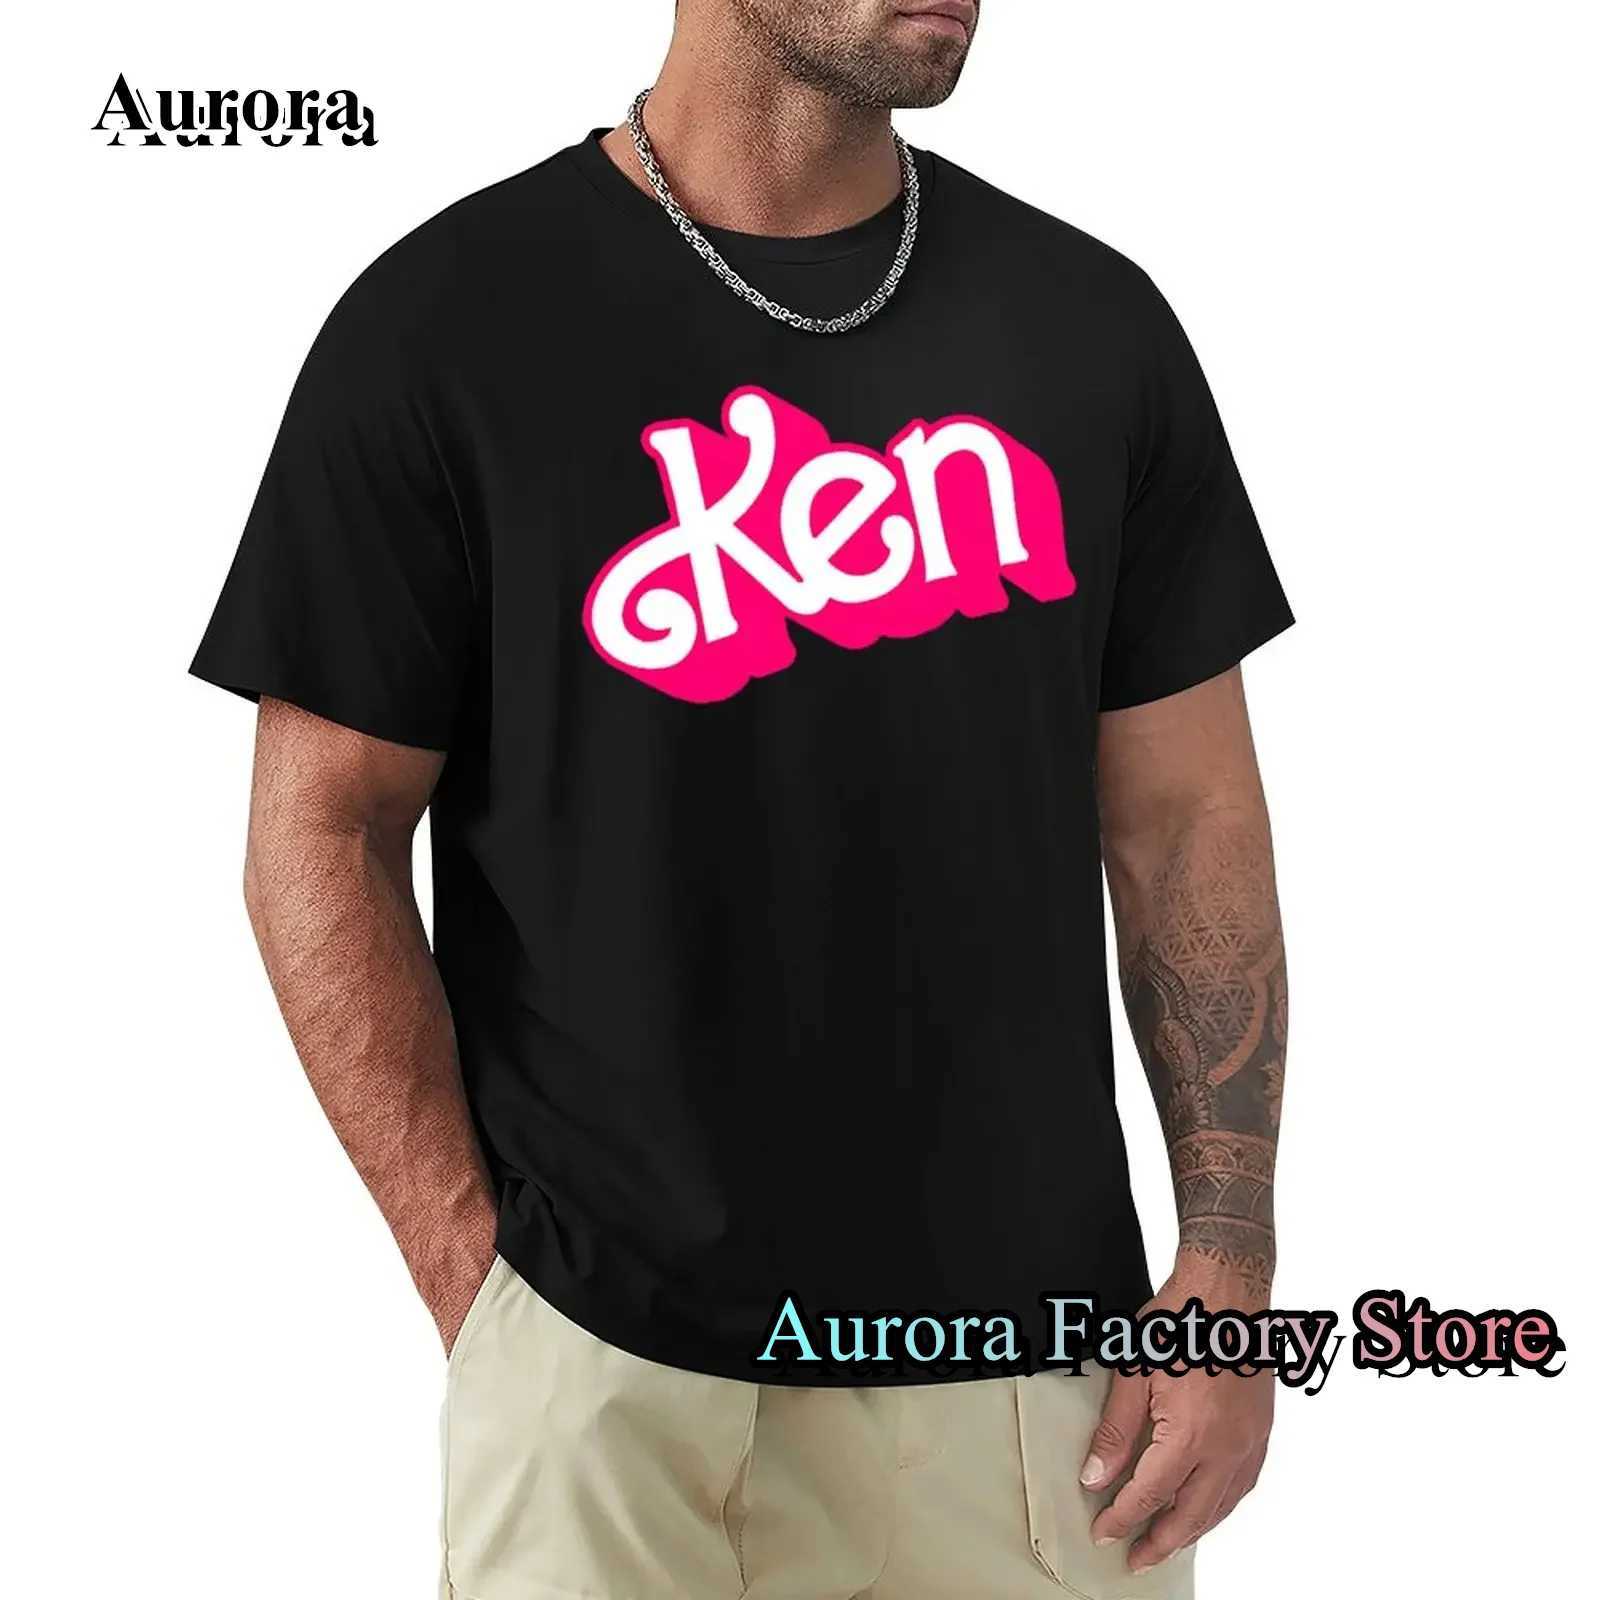 Мужские футболки Мужчина Летняя модная хлопчатобумажная футболка Ken Letter Print Tops TS мужской повседневную одежду Op-вырезы